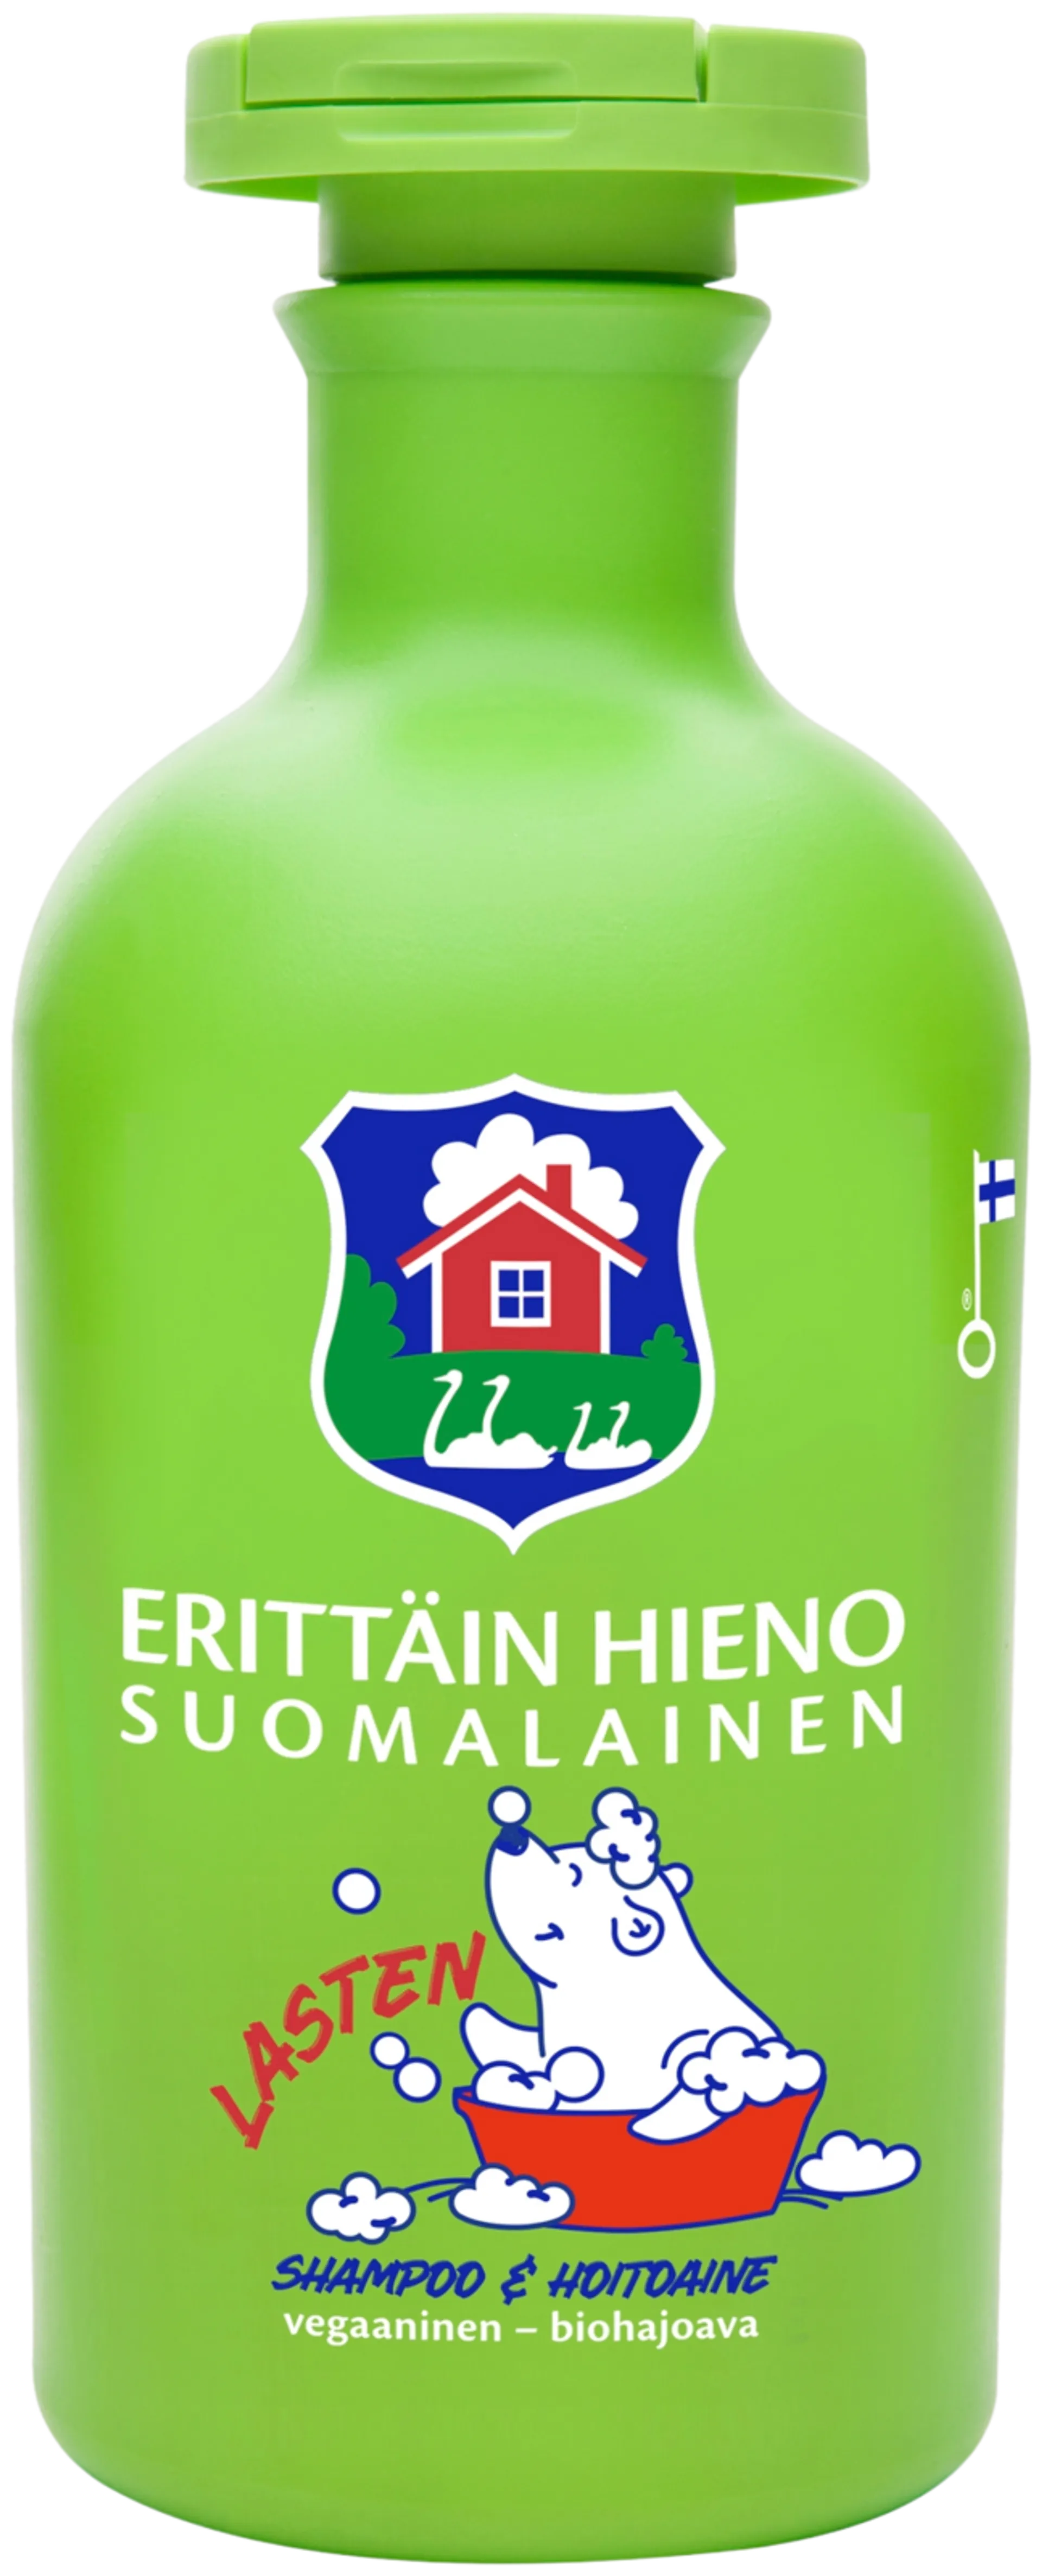 Erittäin Hieno Suomalainen Lasten shampoo & hoitoaine 300ml